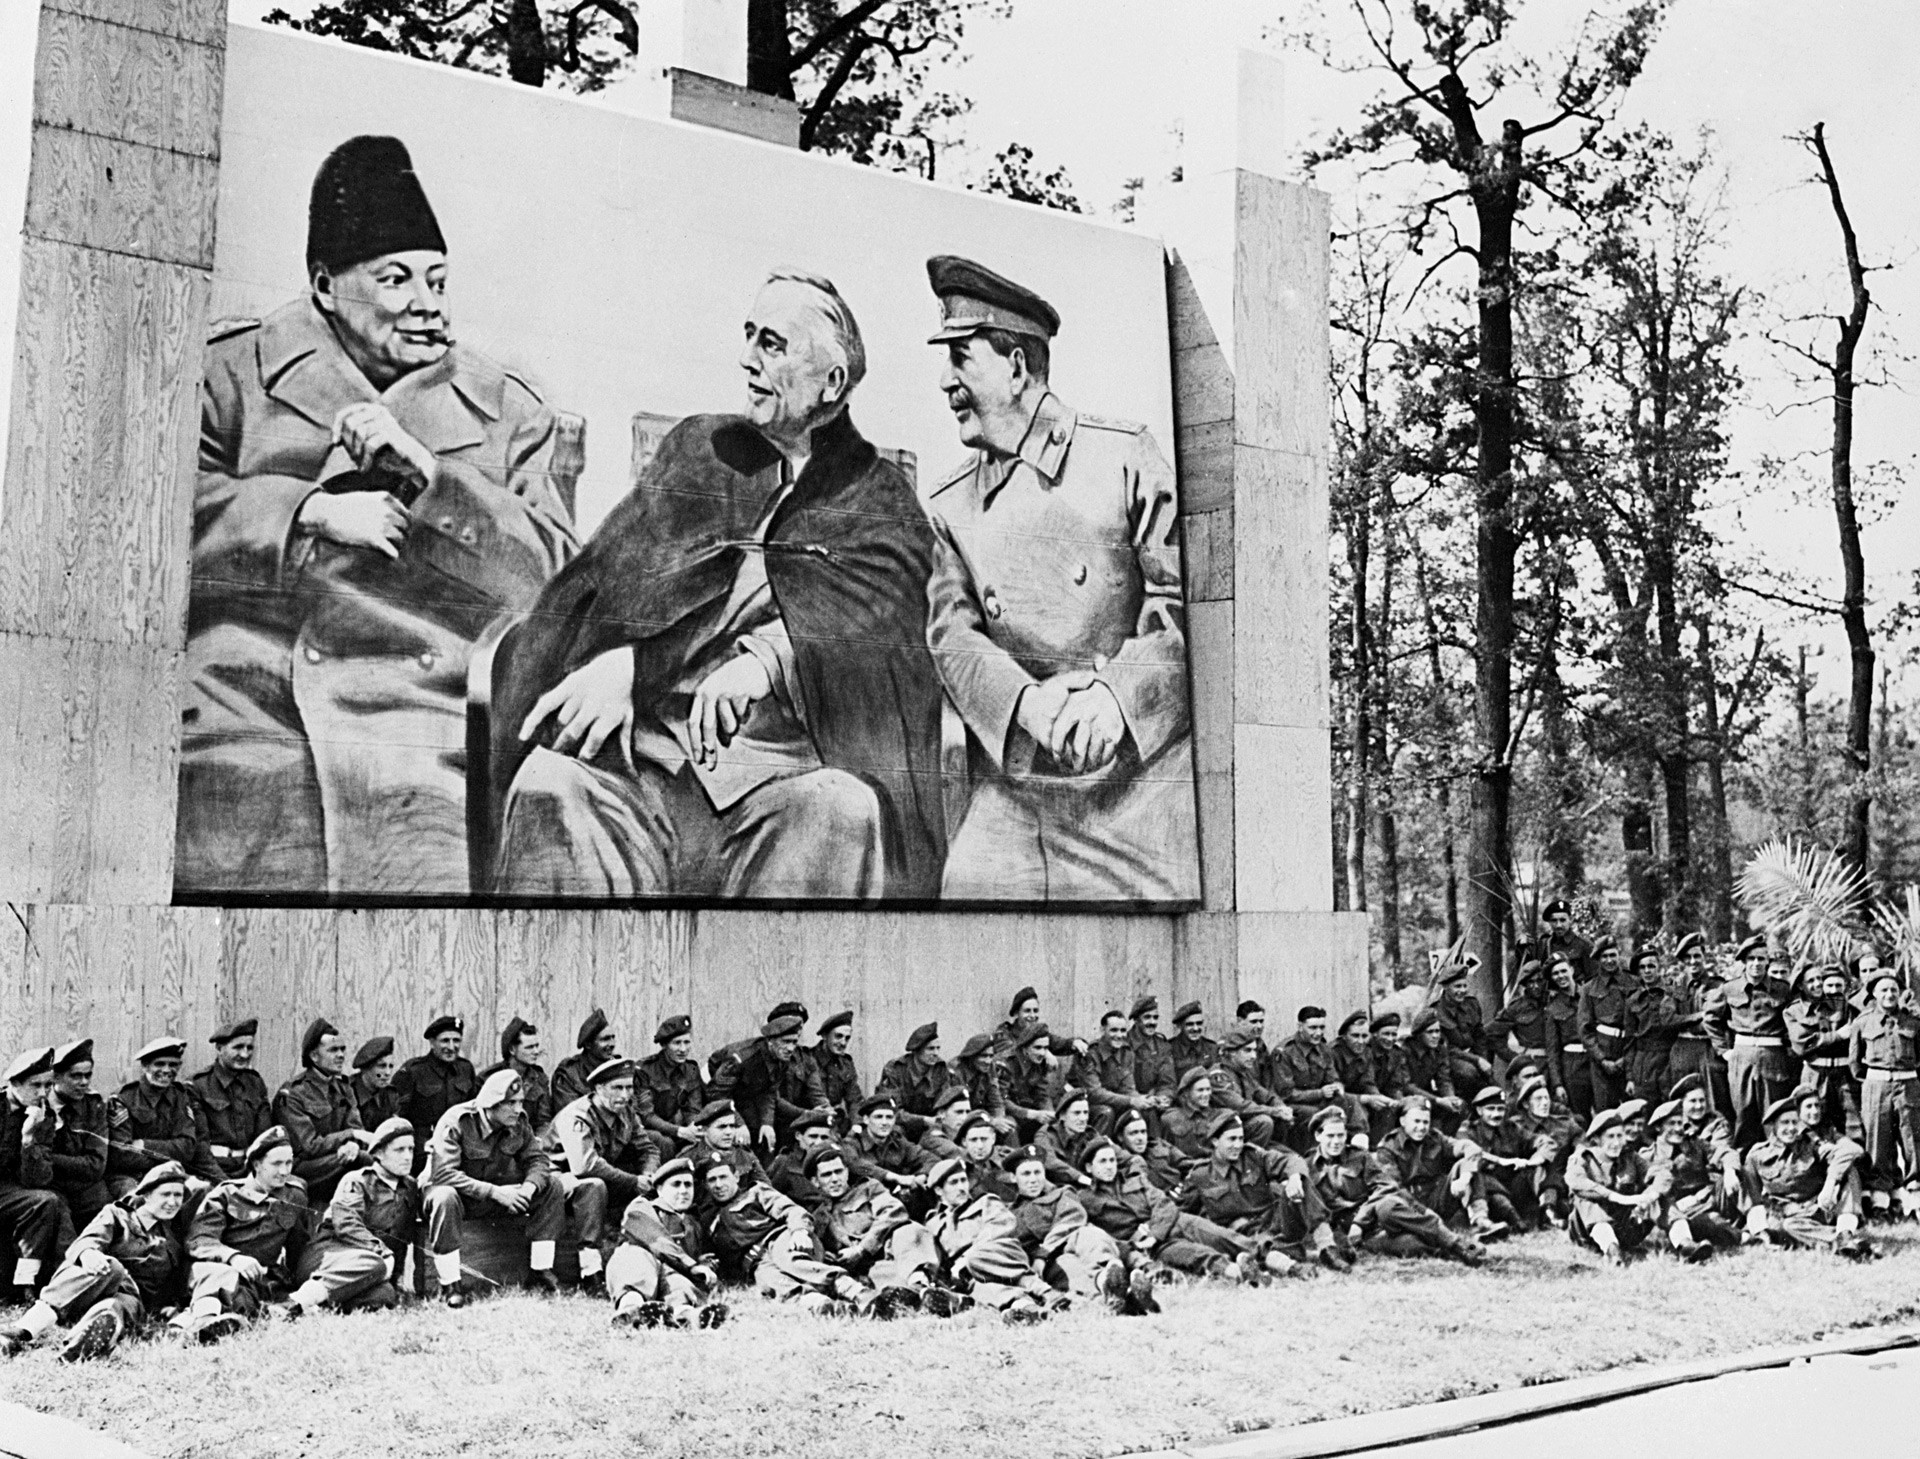 Британски војници, учесници Параде победе савезника у Берлину, одмарају се испод великог плаката са портретима Черчила, Рузвелта и Стаљина у Јалти. 